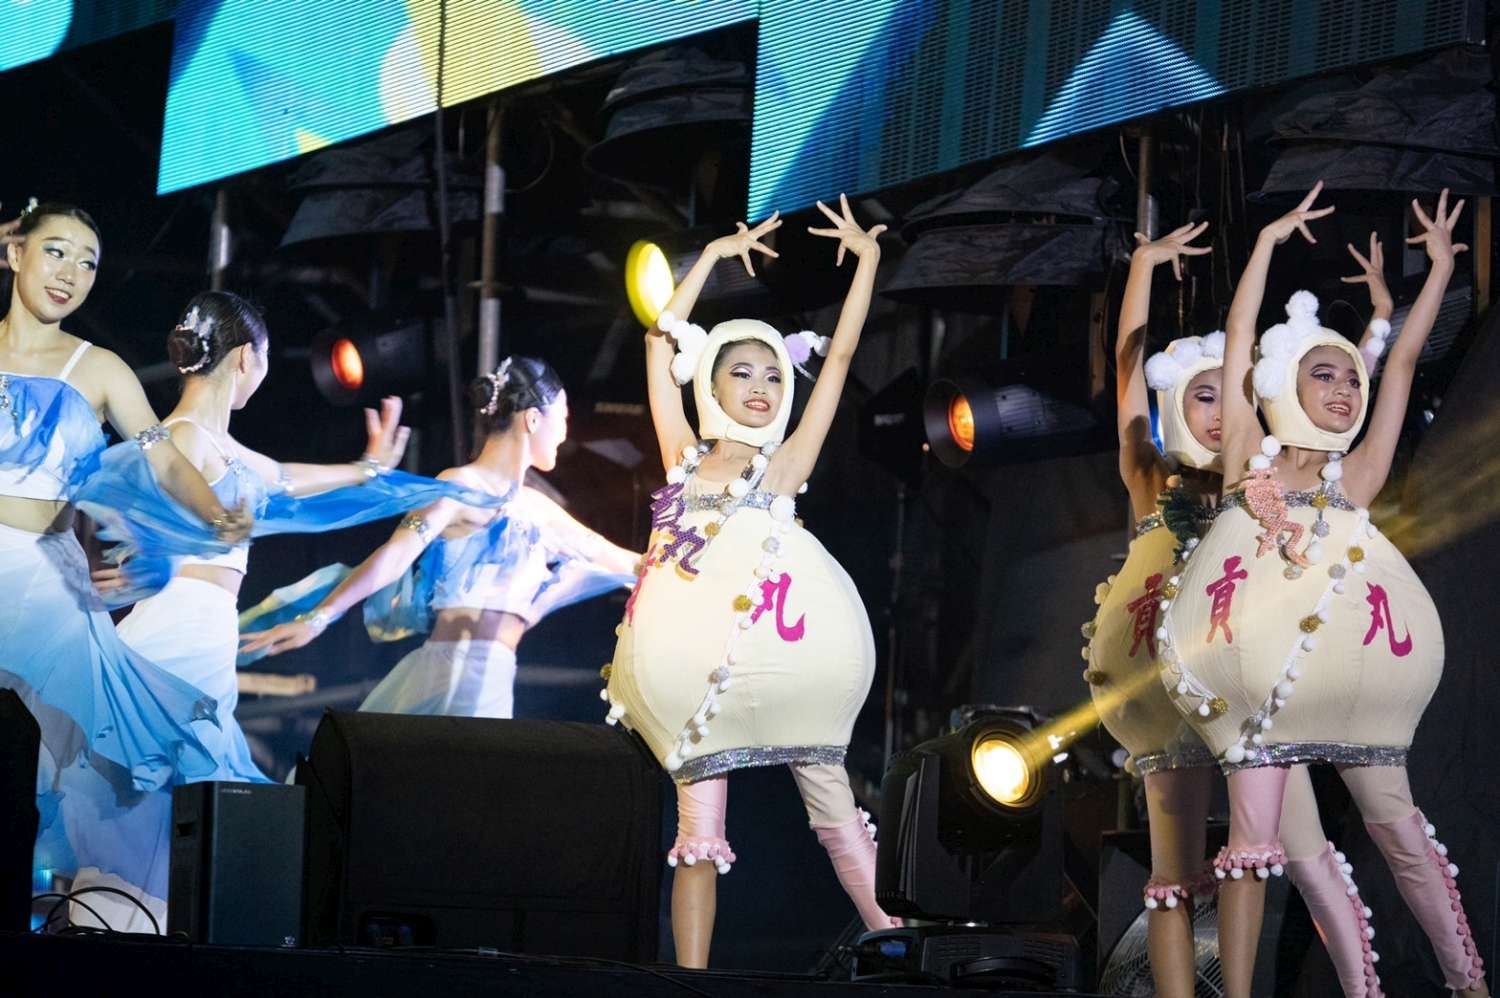 國慶晚會在新竹市由欣蕾舞蹈團帶來精彩演出